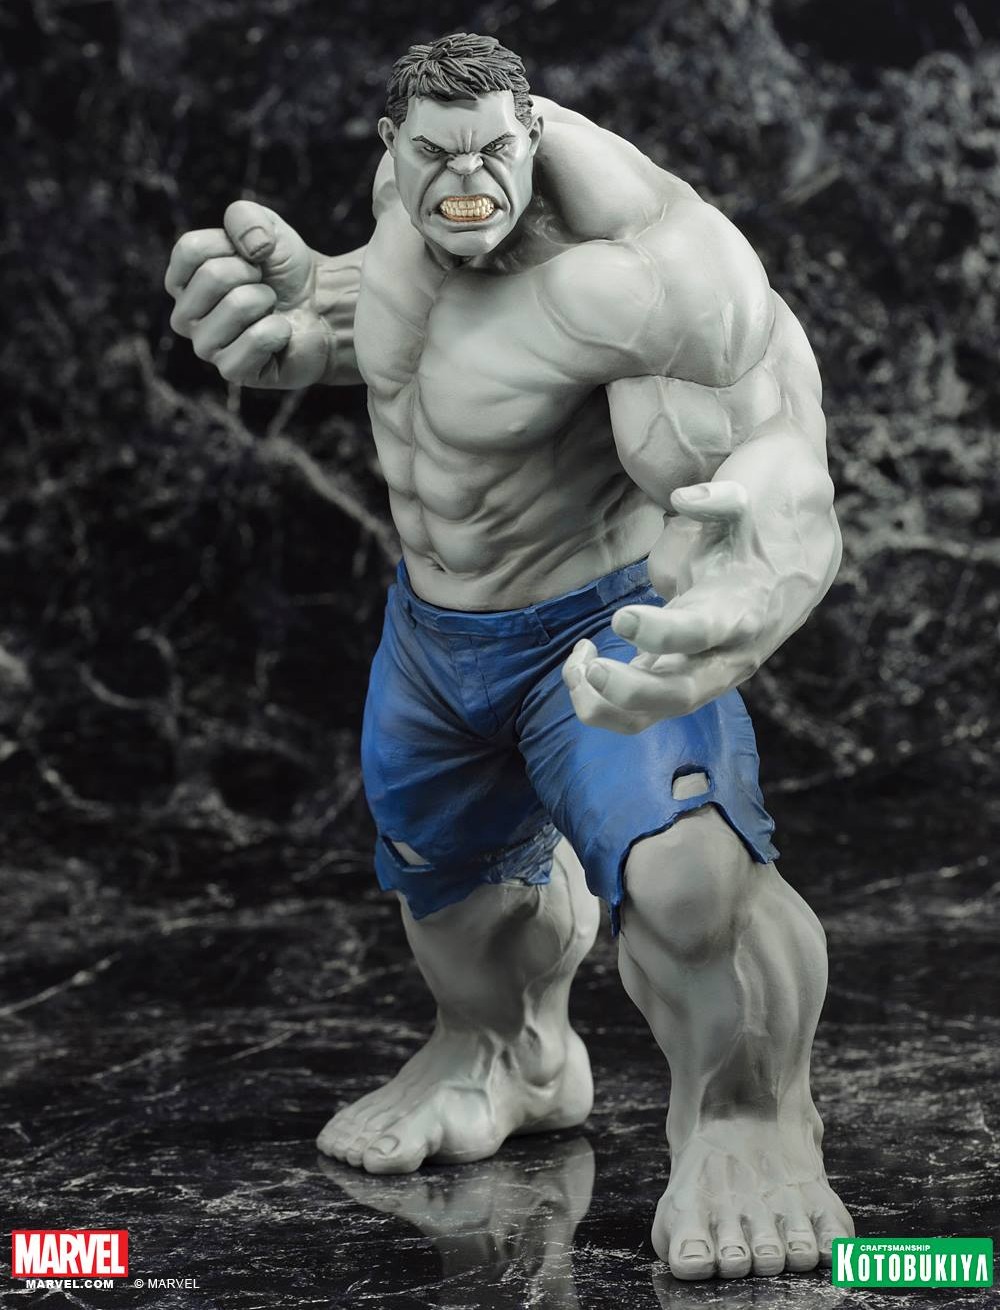 SDCC 2014 Kotobukiya Grey Hulk ARTFX+ Statue Revealed! - Marvel Toy News